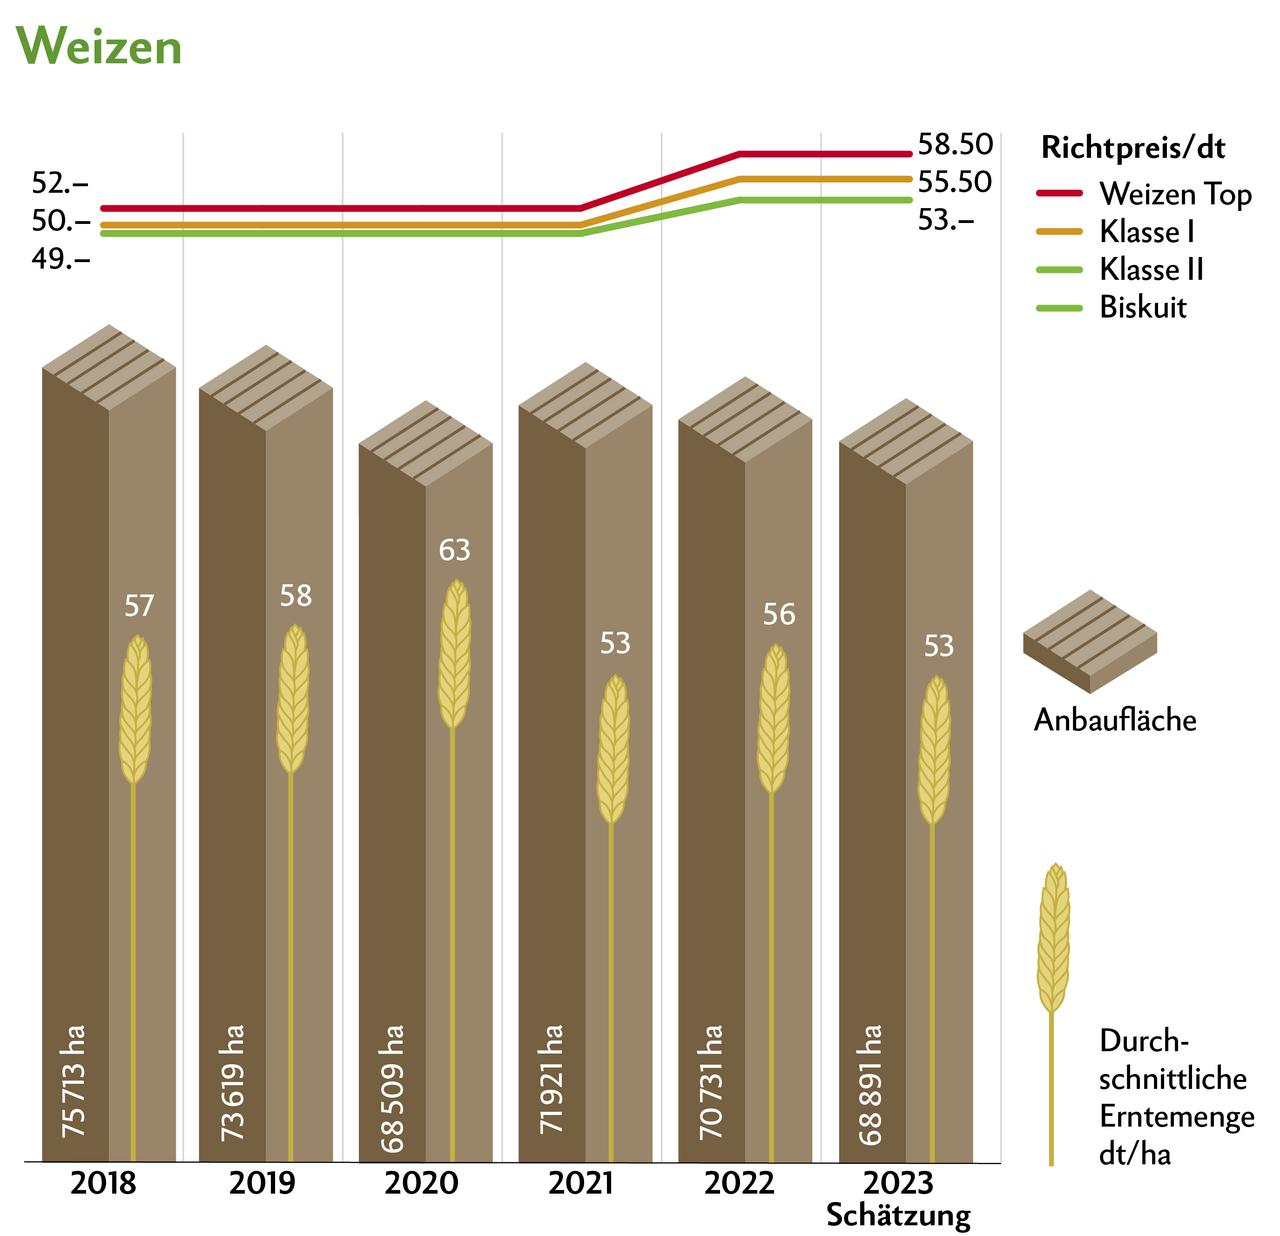 2023 waren die Weizen-Erträge gut, ebenso die Qualität. Erfreulicherweise waren die Mykotoxin-Werte auf dem tiefsten Stand seit Messbeginn. Quelle: Swissgranum